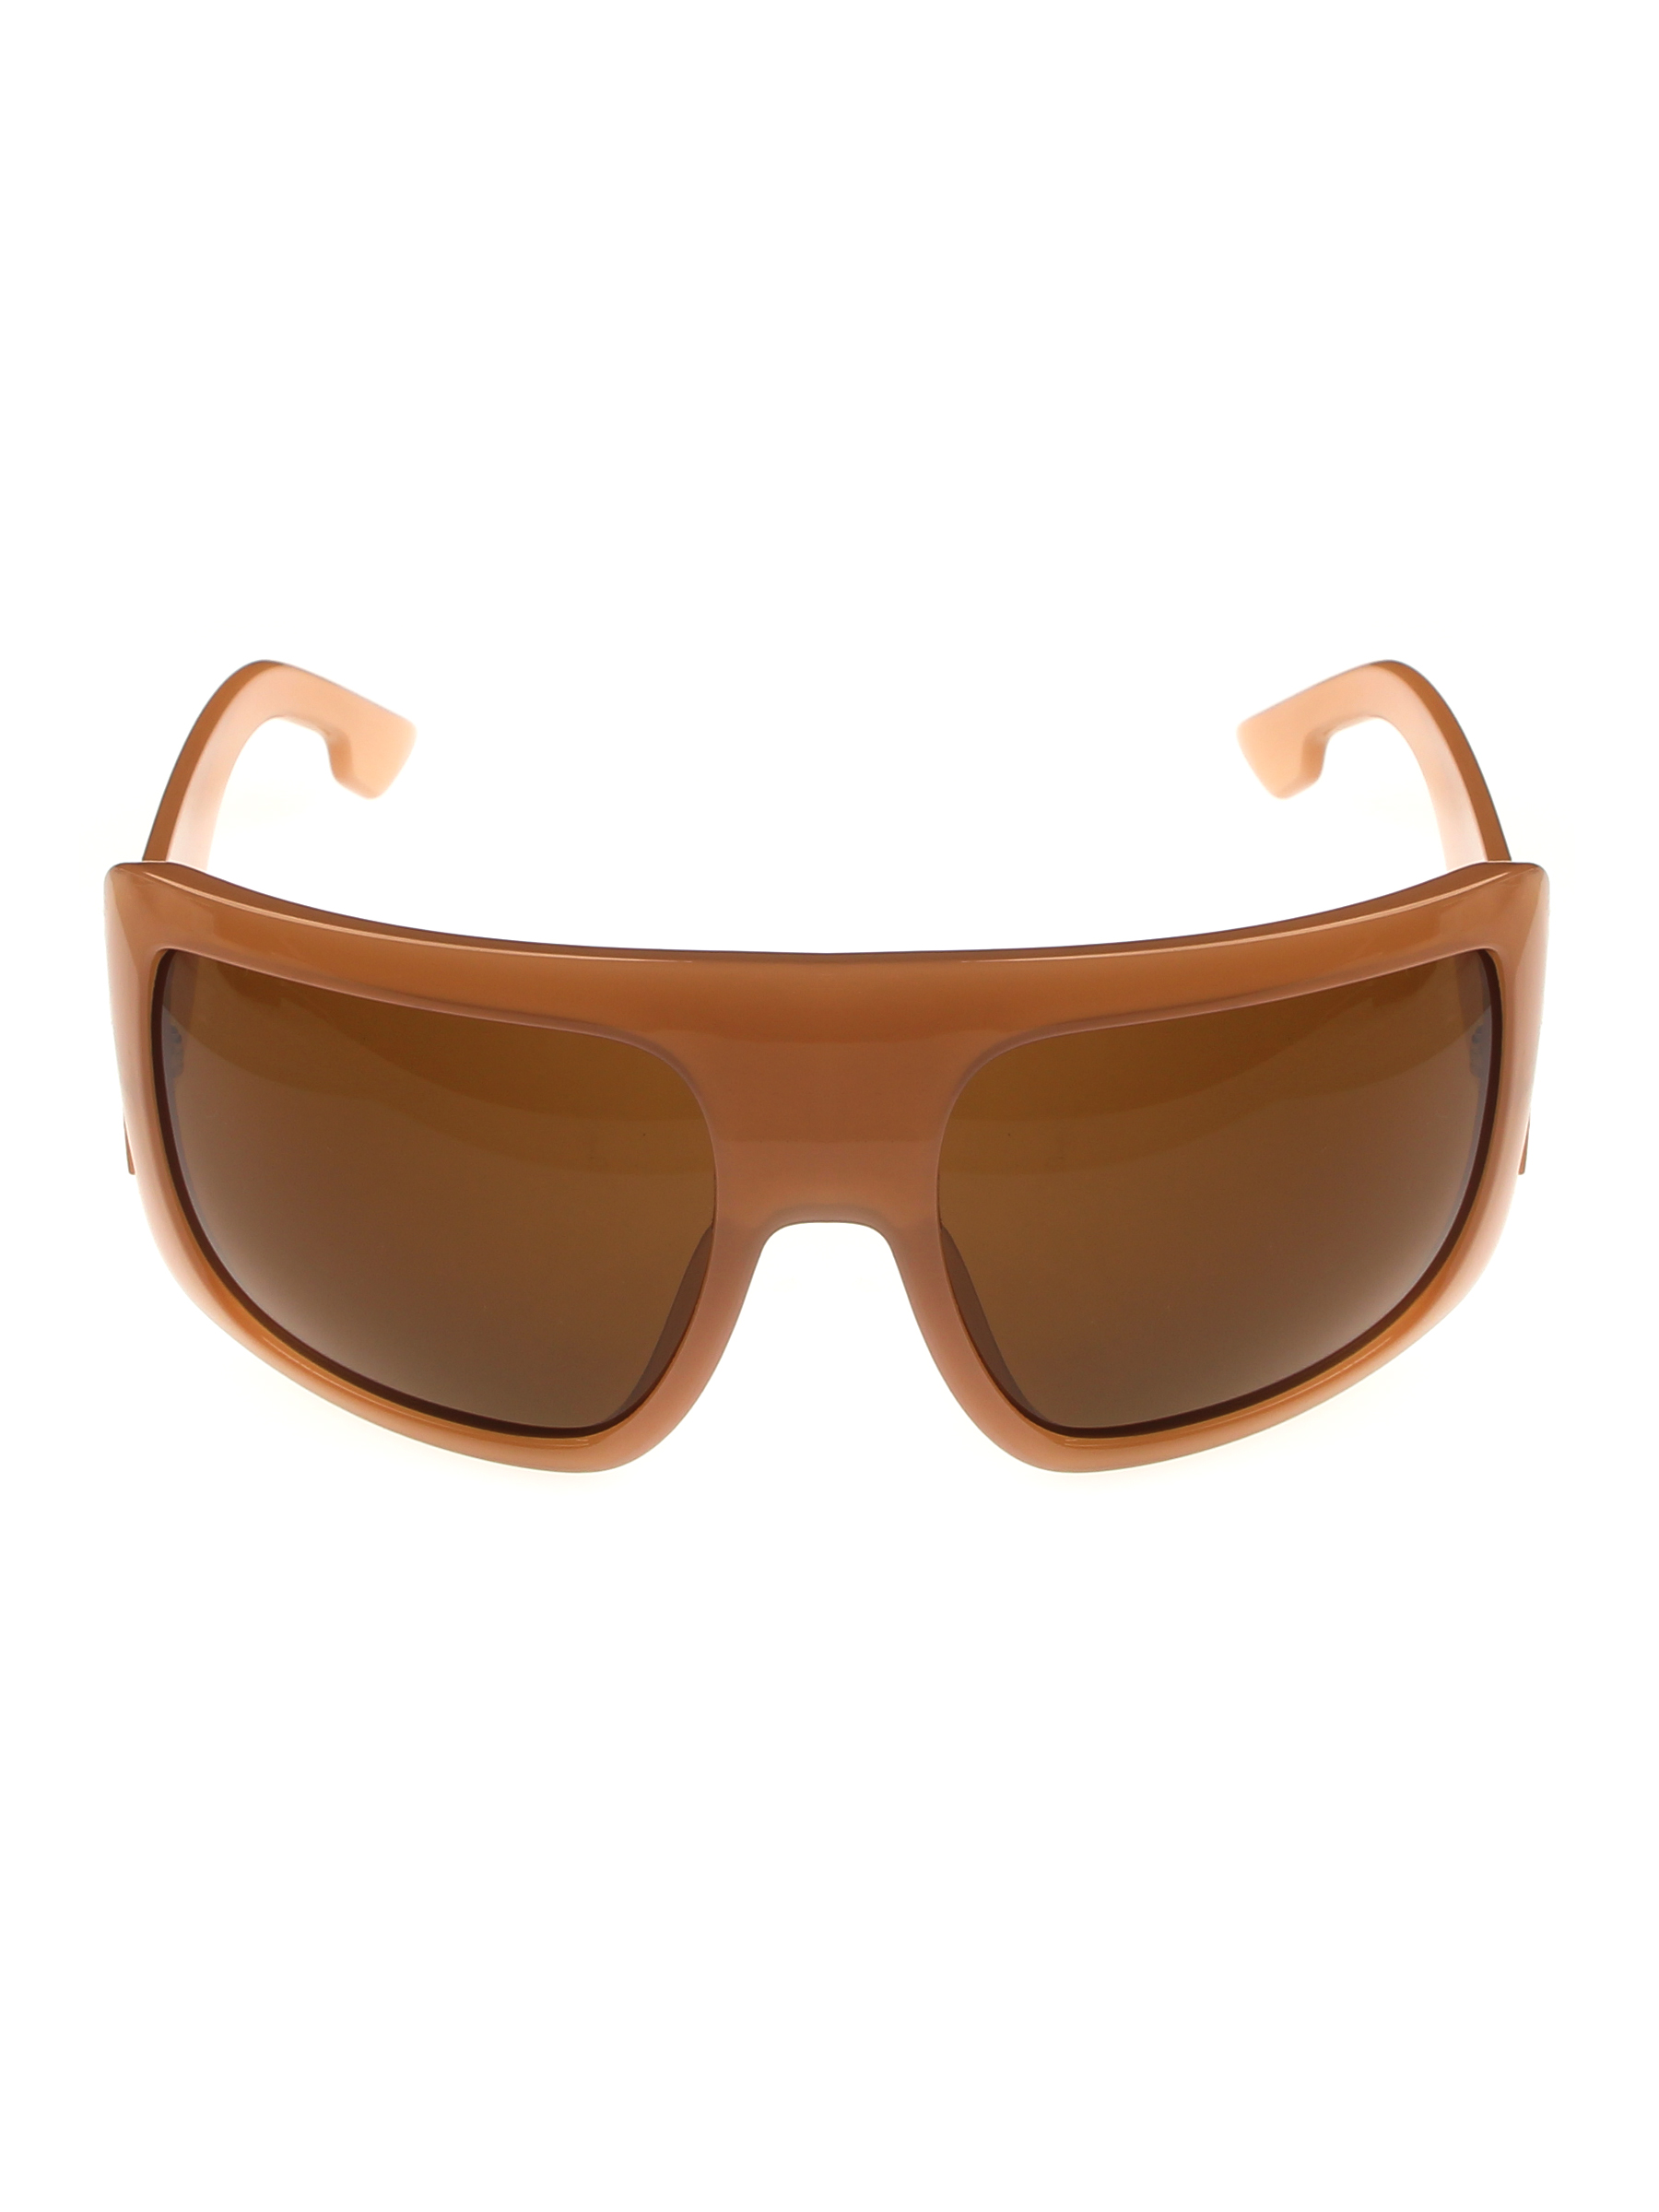 фото Солнцезащитные очки женские pretty mania ndp023 коричневые/леопардовые